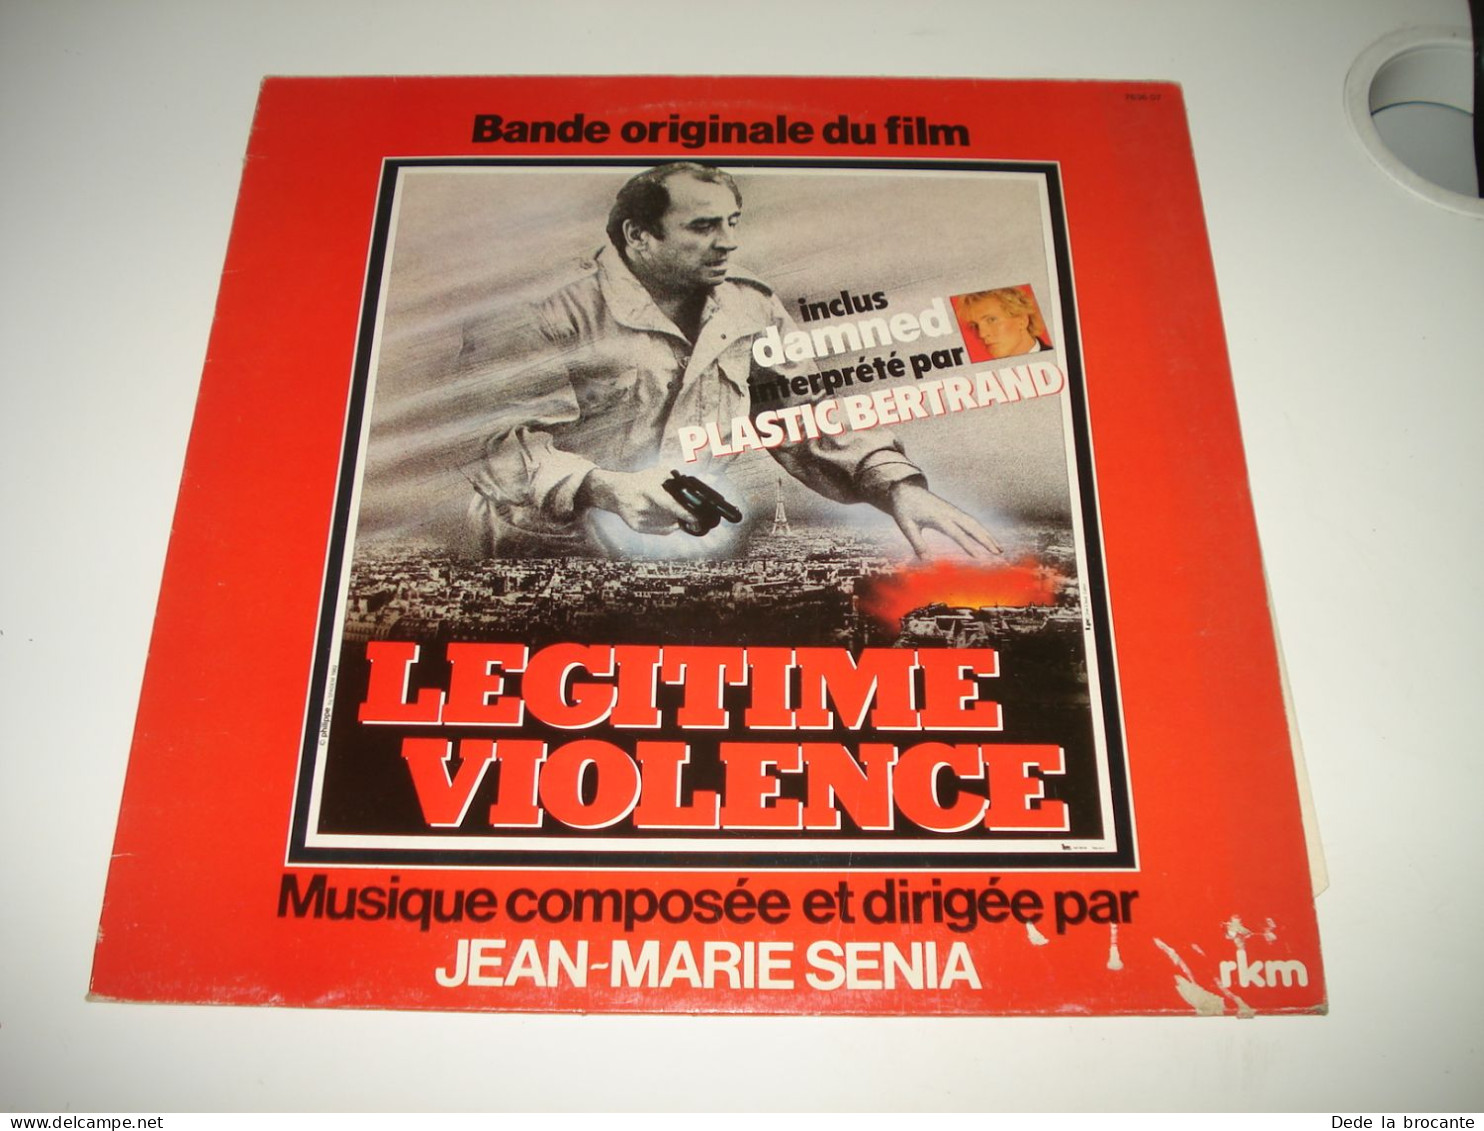 B7 / LP  " Légitime Violence " Senia Plastic Bertrand - 7636 07 - Fr 1982 - M/VG - Musique De Films